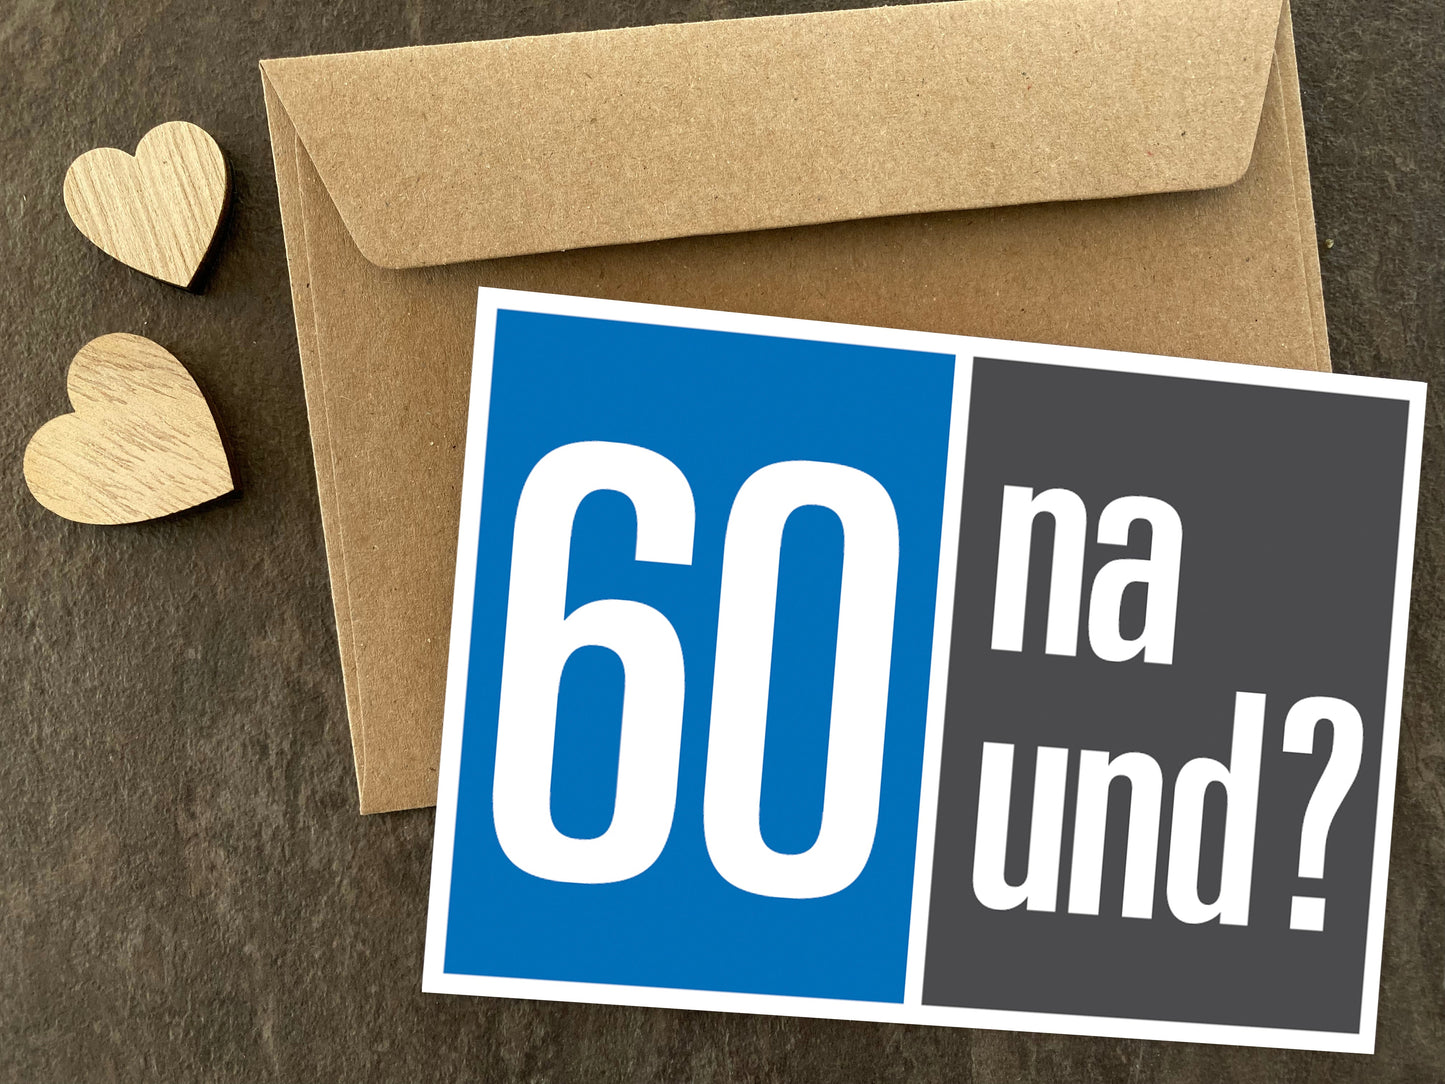 Einladung zum 60. Geburtstag: 60 na und? Individuelle Einladung